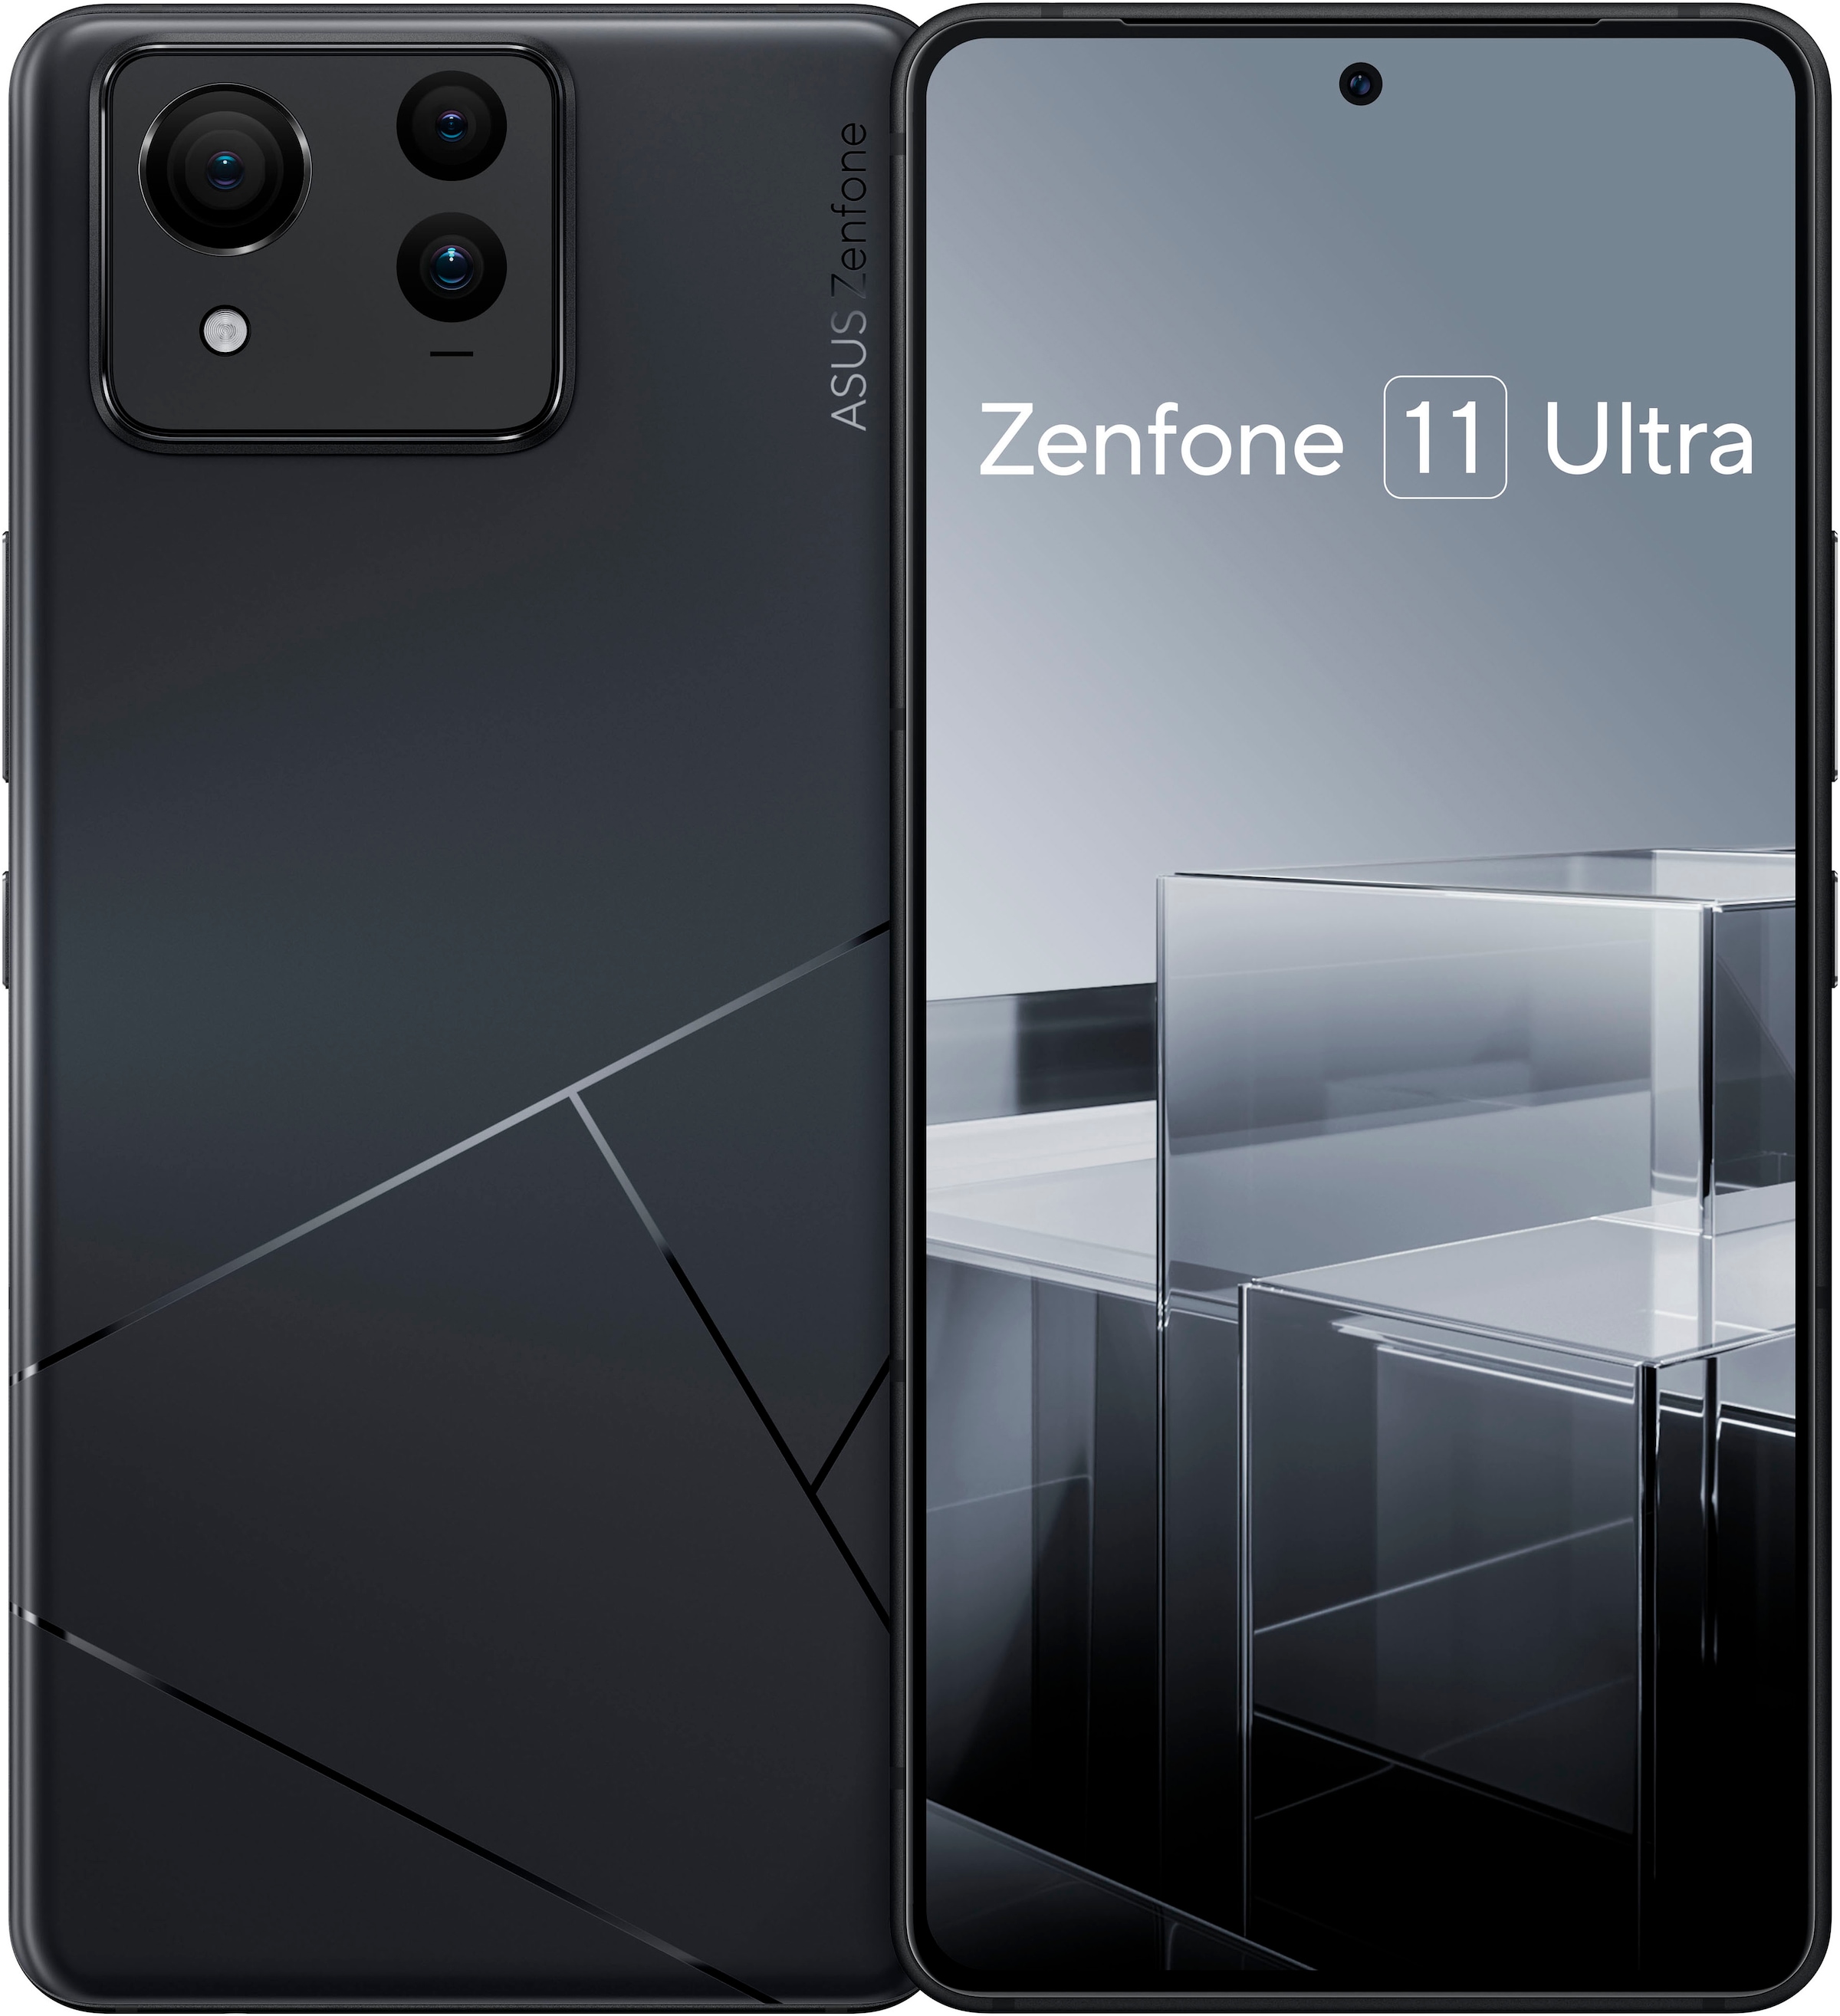 Smartphone »Zenfone 11 Ultra 512 GB«, schwarz, 17,22 cm/6,78 Zoll, 512 GB...